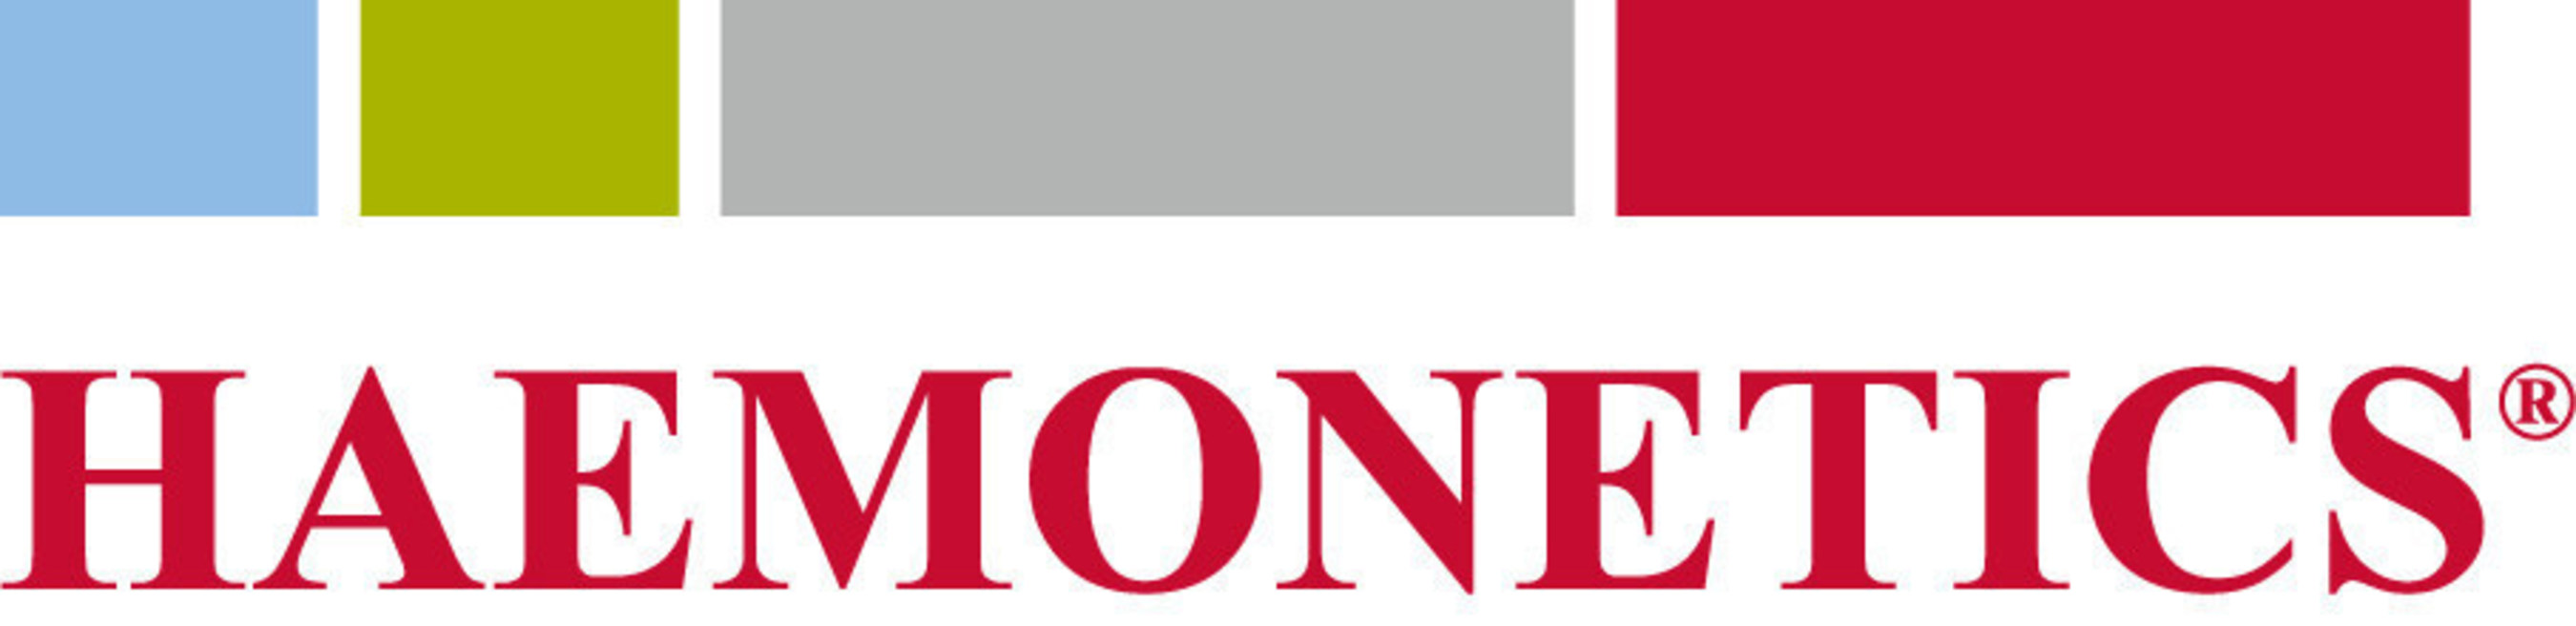 HAE logo April 2016.